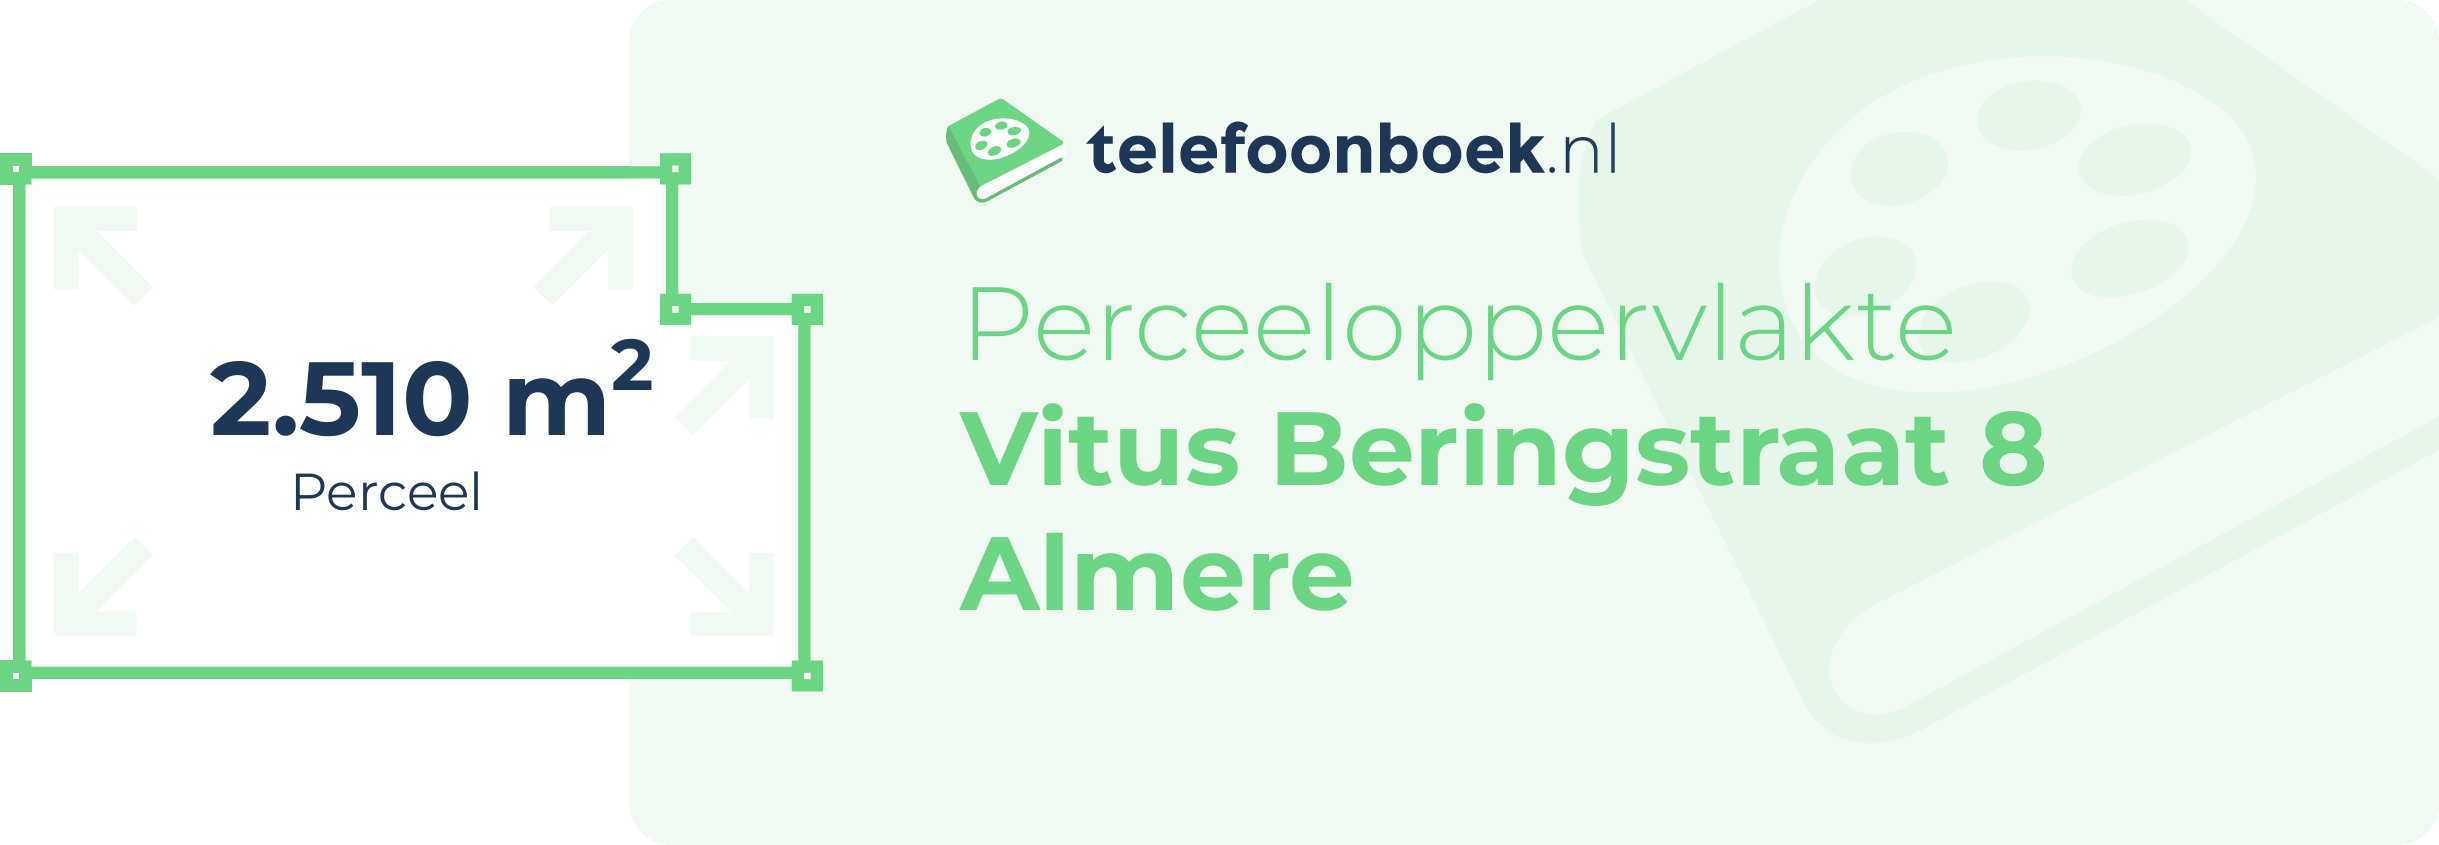 Perceeloppervlakte Vitus Beringstraat 8 Almere